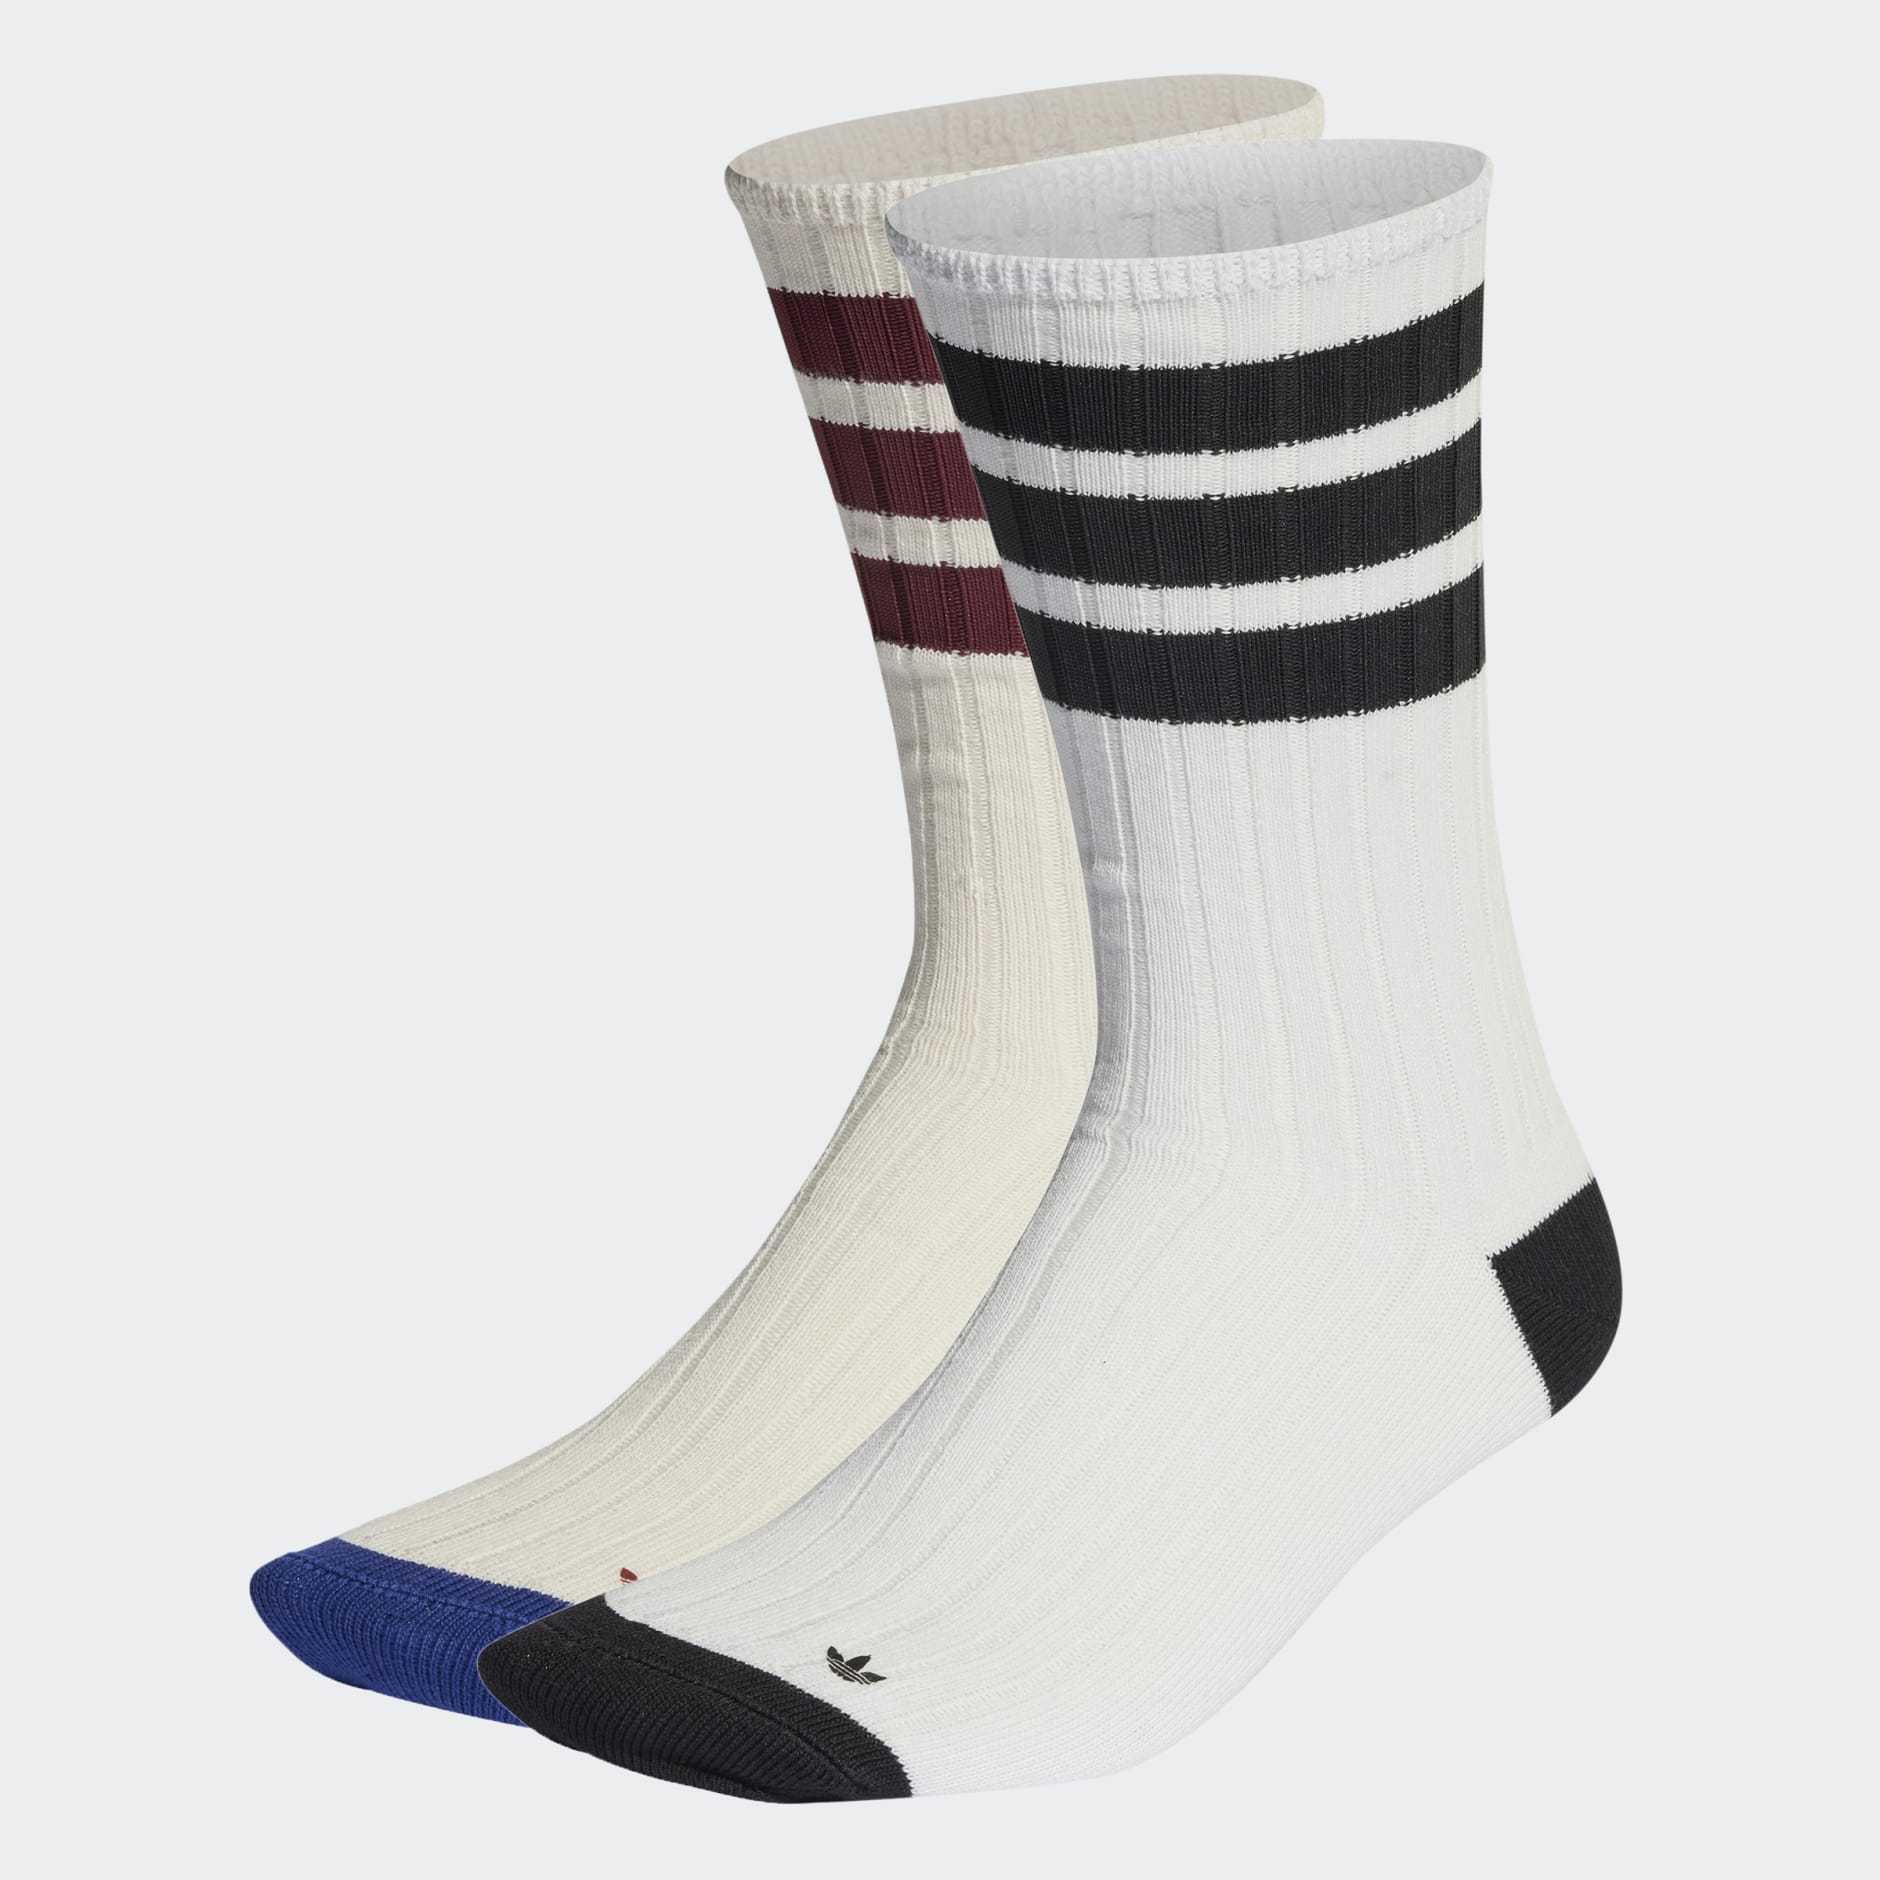 Accessories - Premium Mid Crew Socks 2 Pairs - White | adidas Kuwait